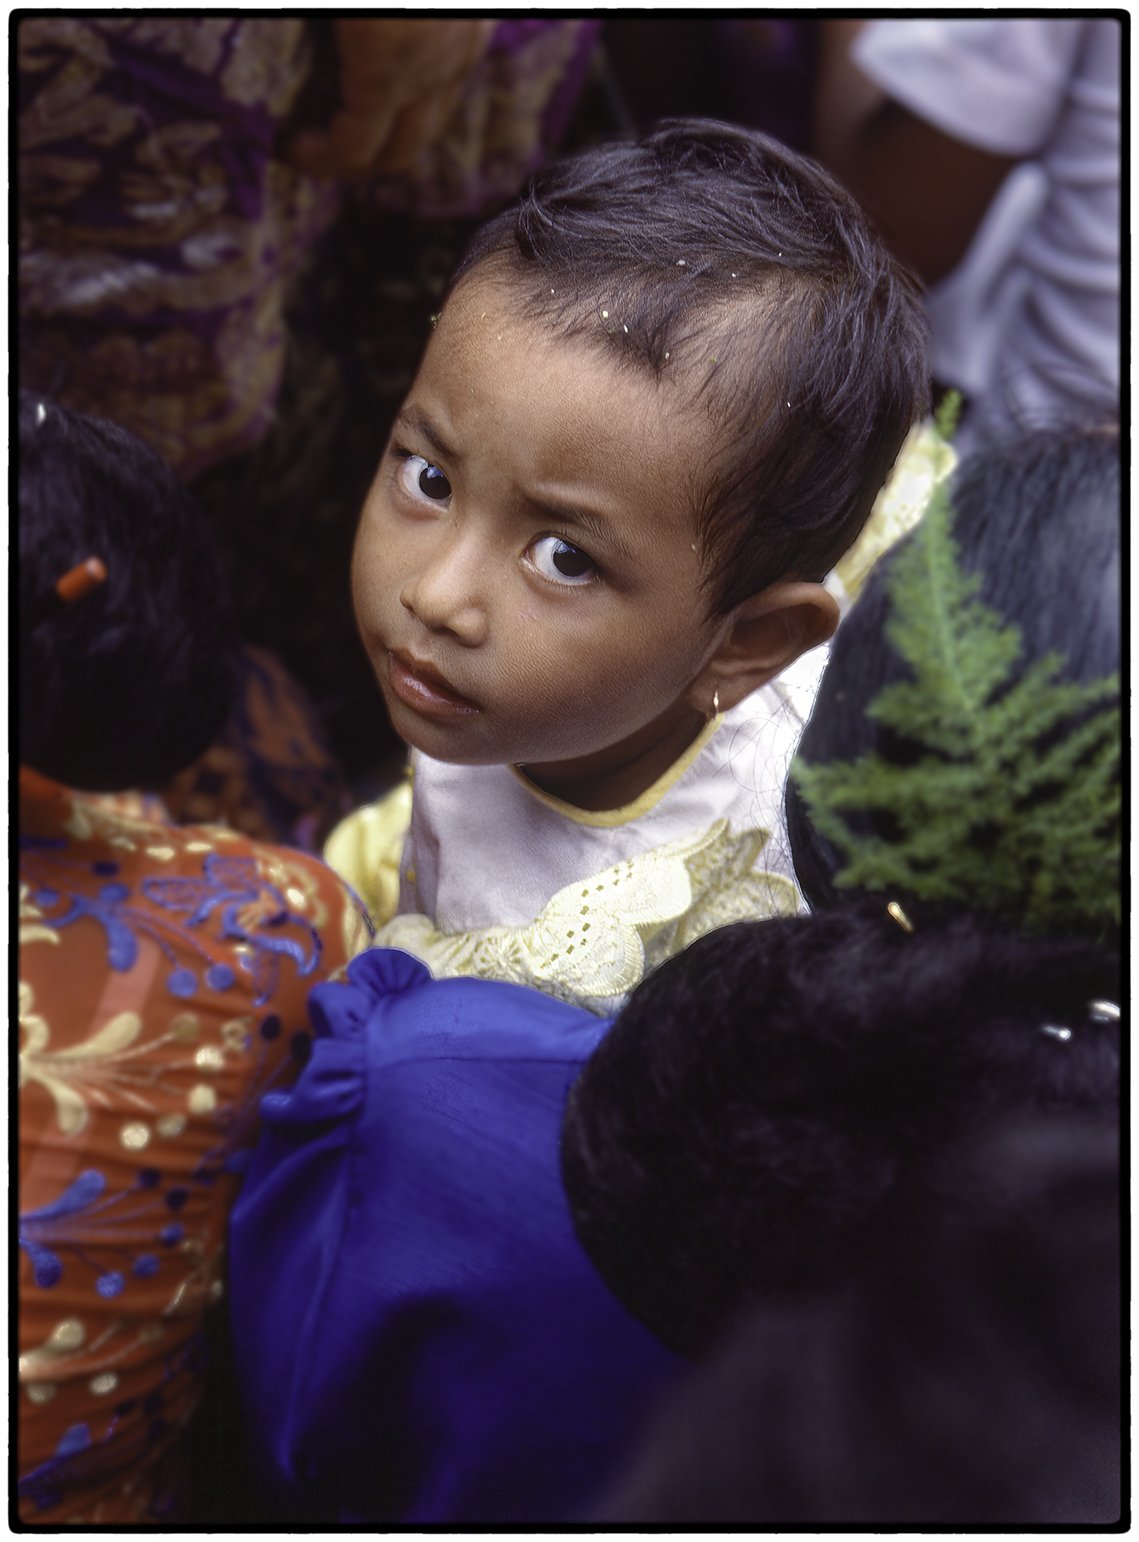 Child, Bali